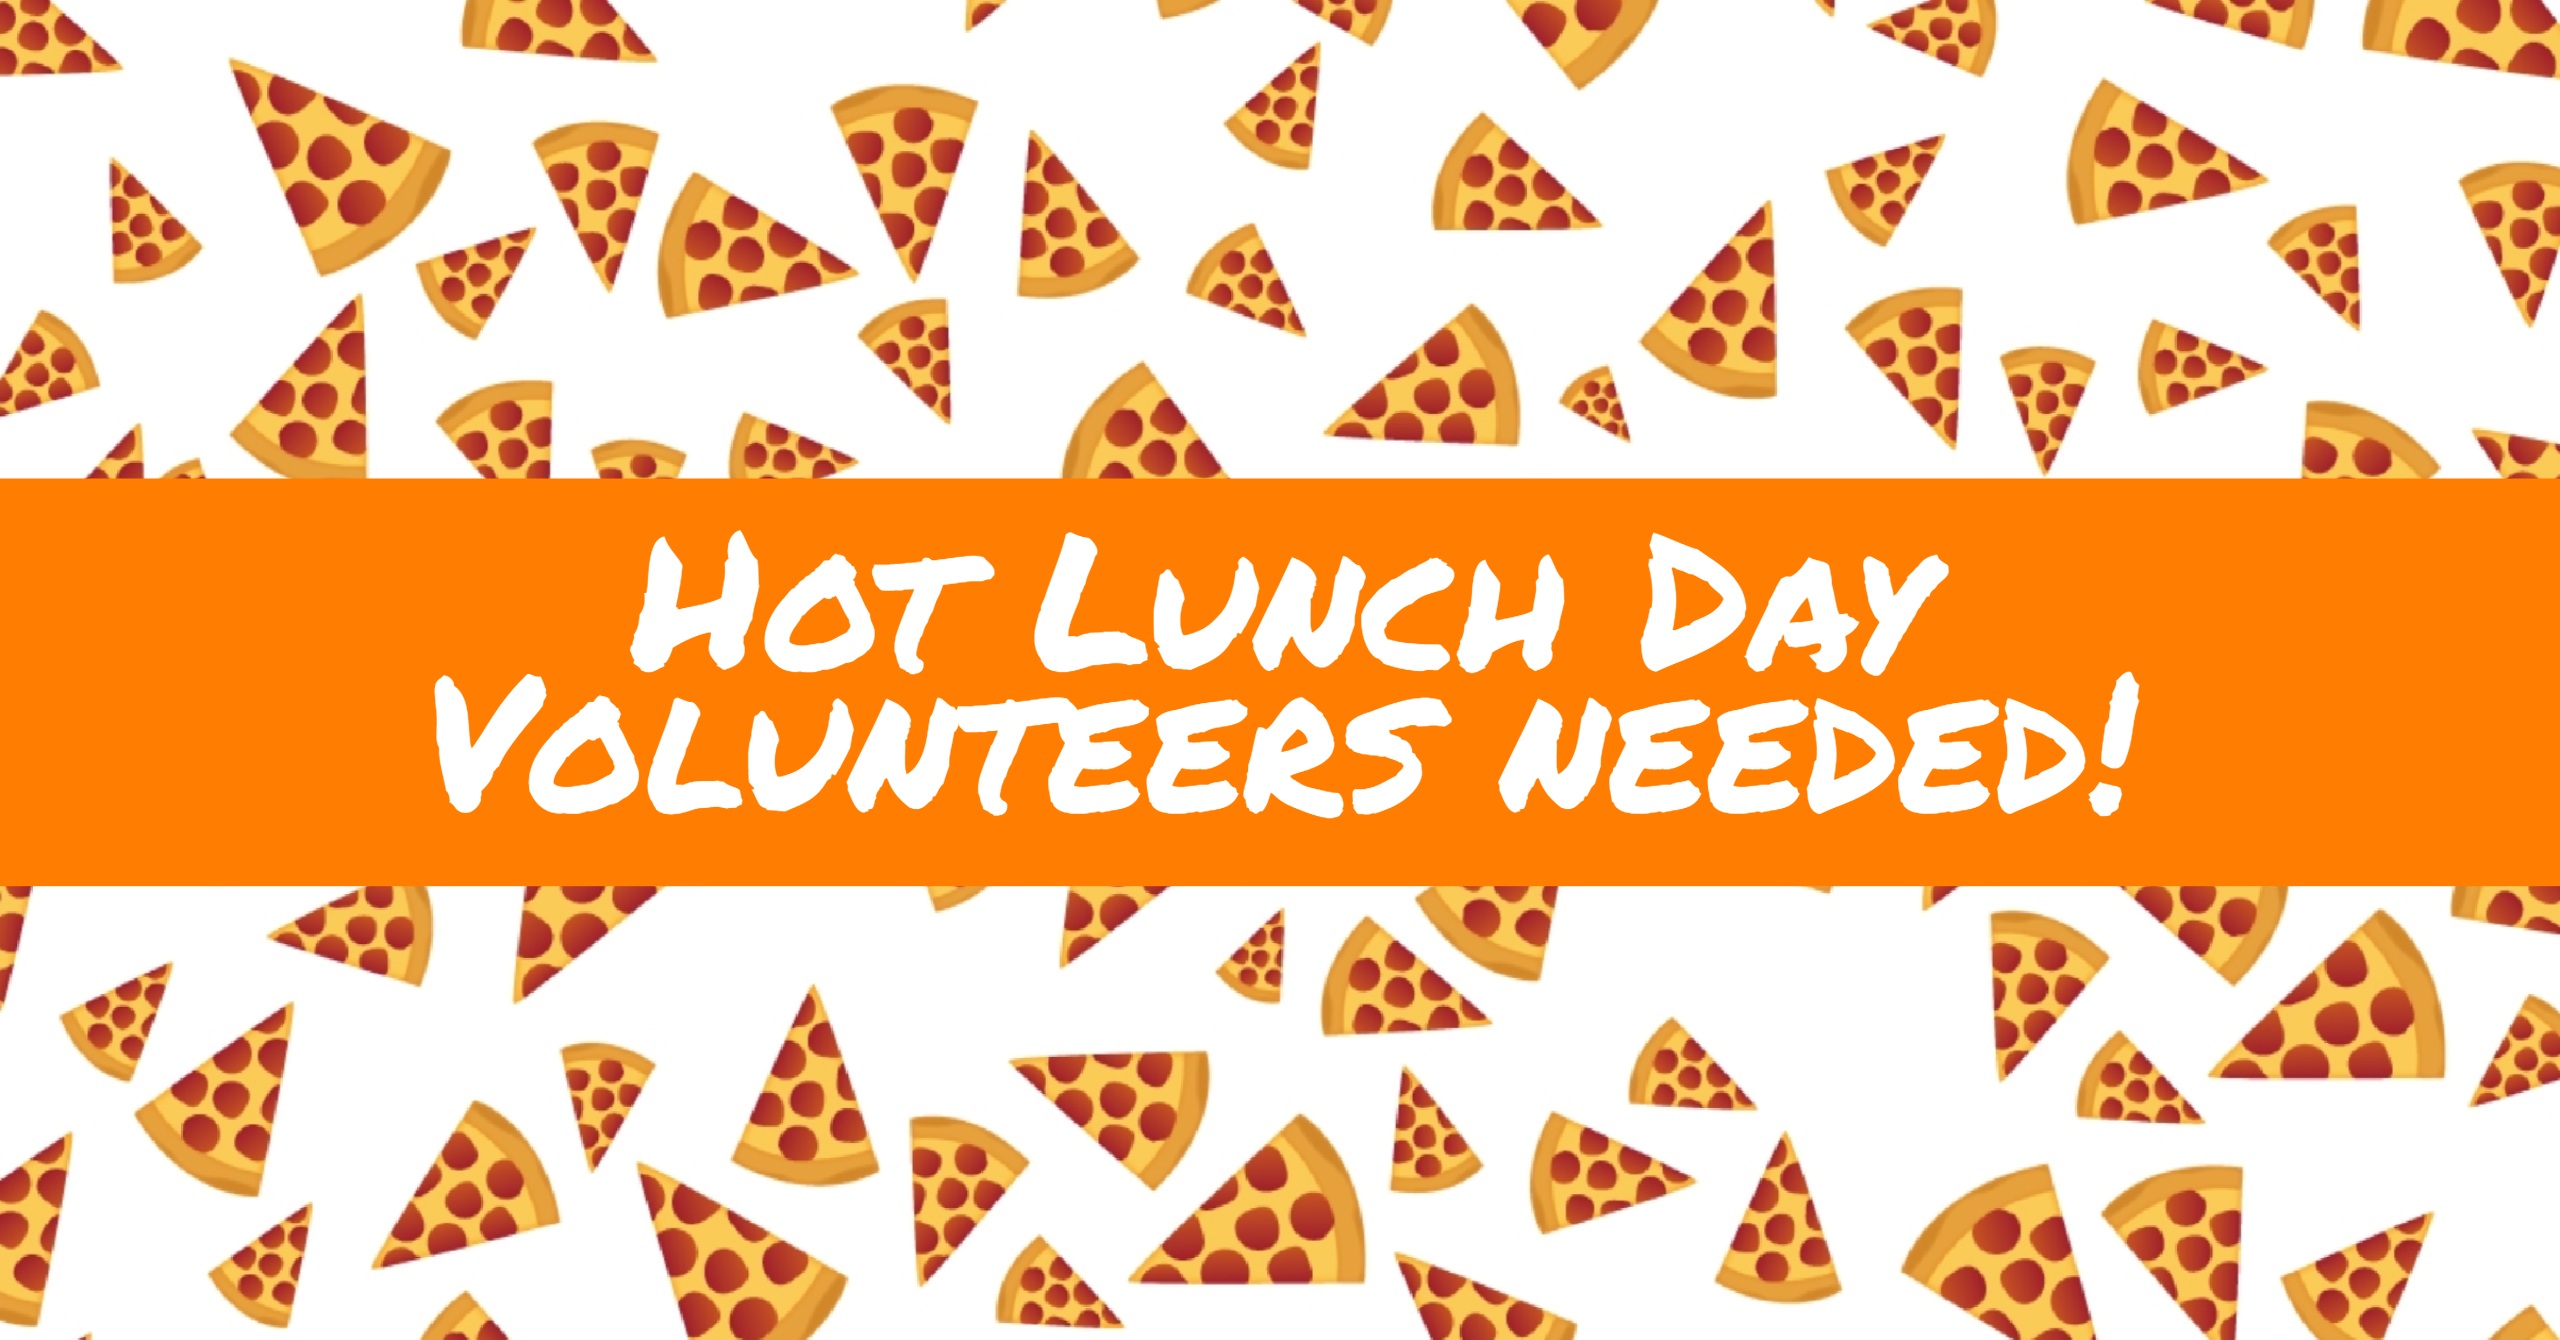 Hot Lunch Day Volunteers Needed!